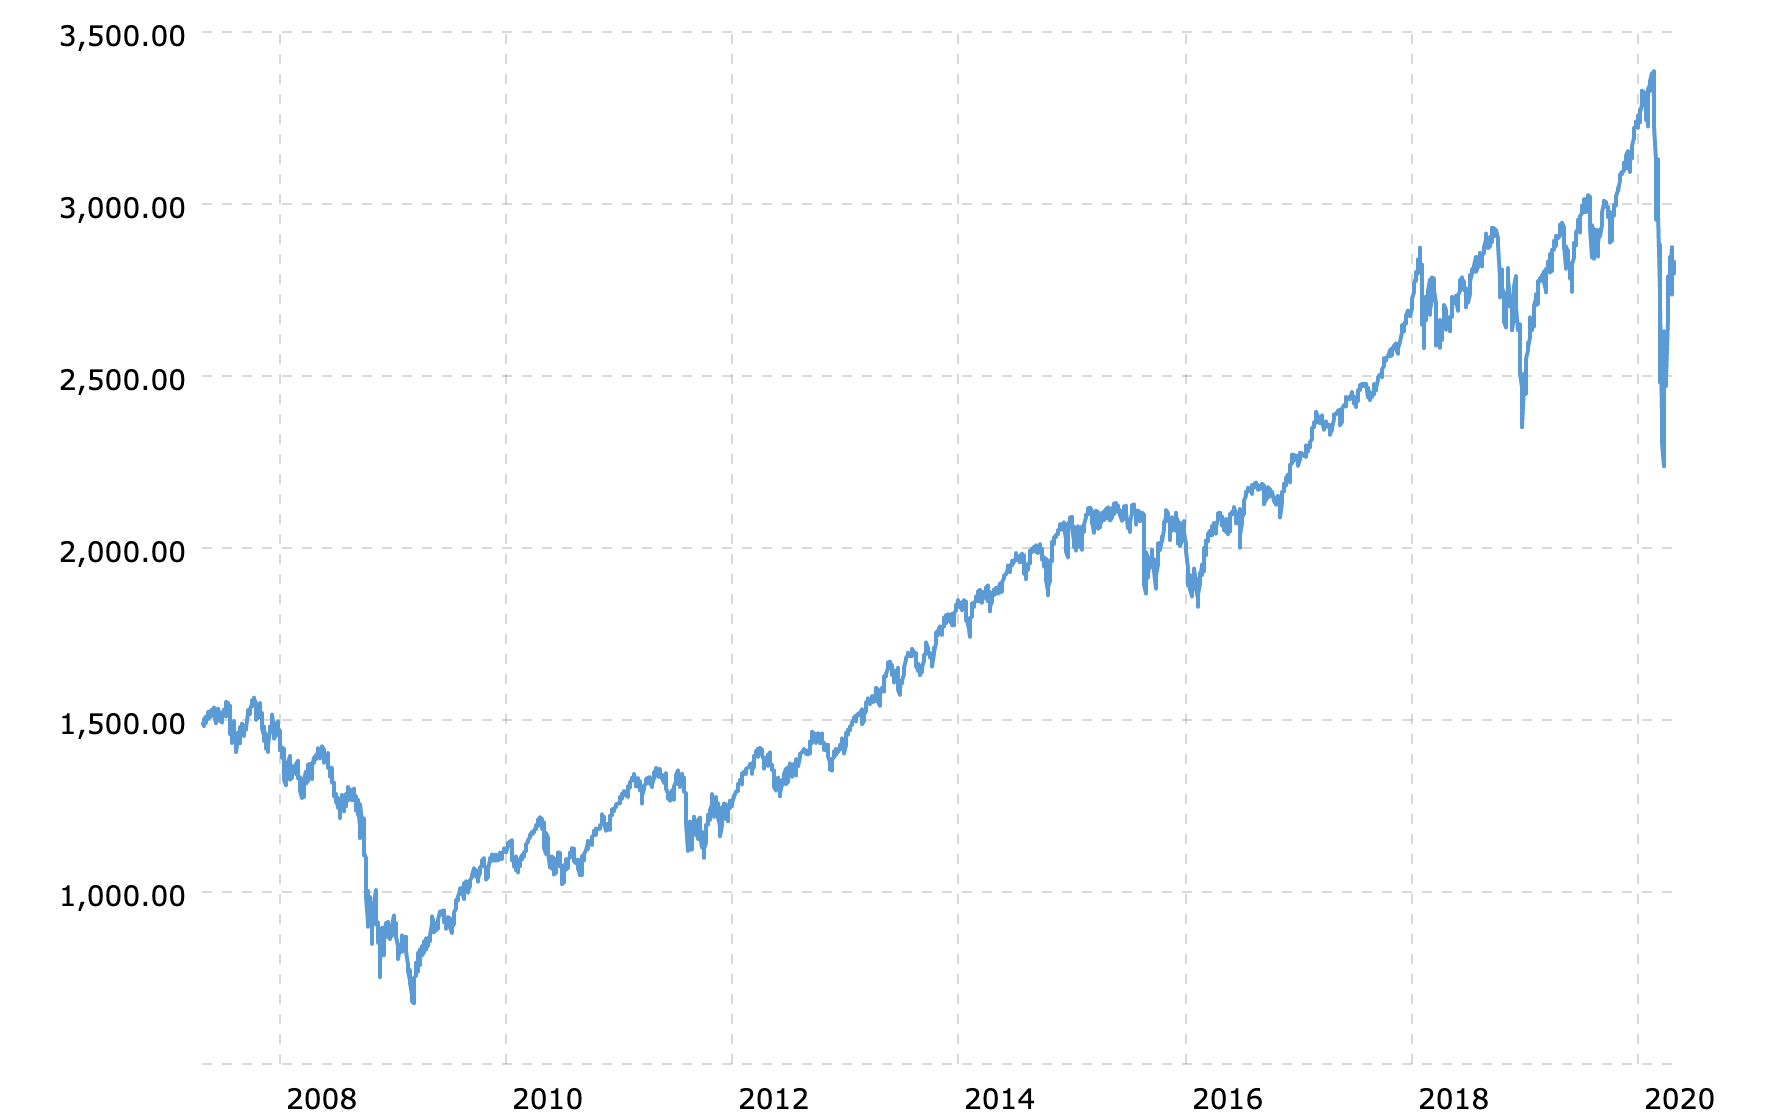 Valor do S&P 500 desde 2007. Fonte: Macrotrends